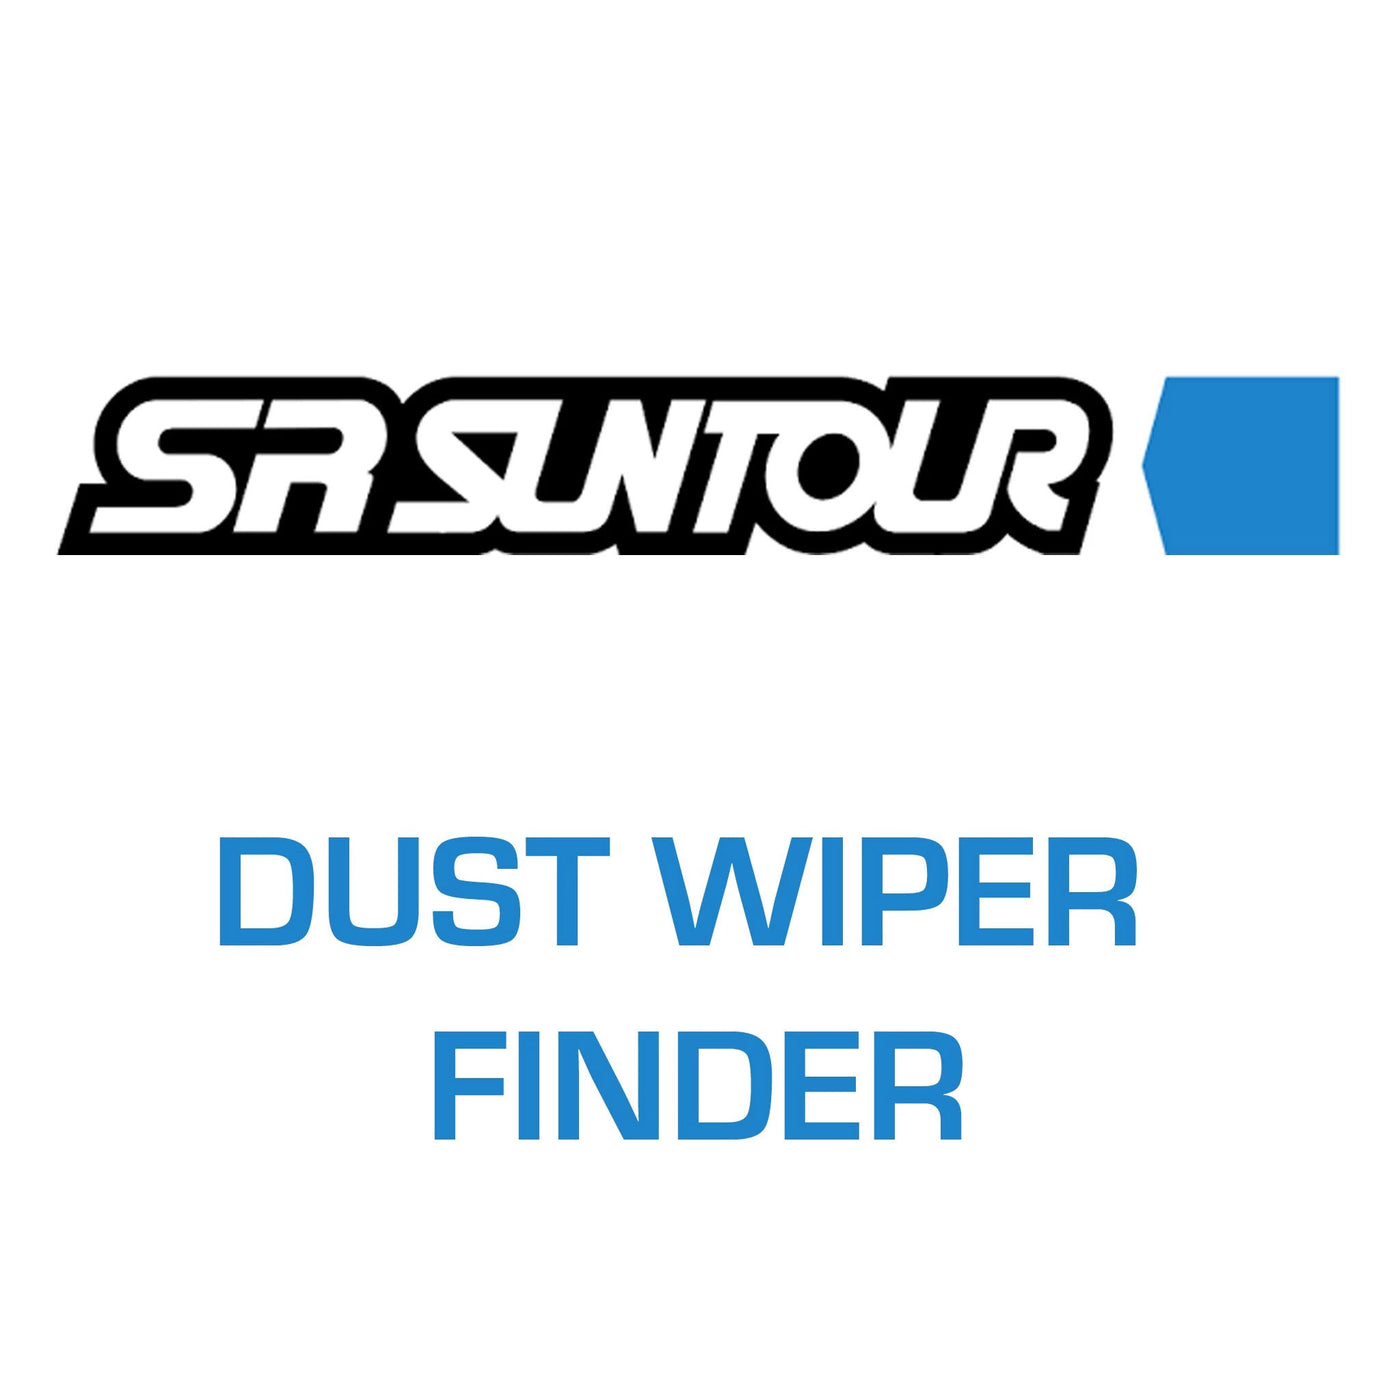 SR Suntour dust wiper finder